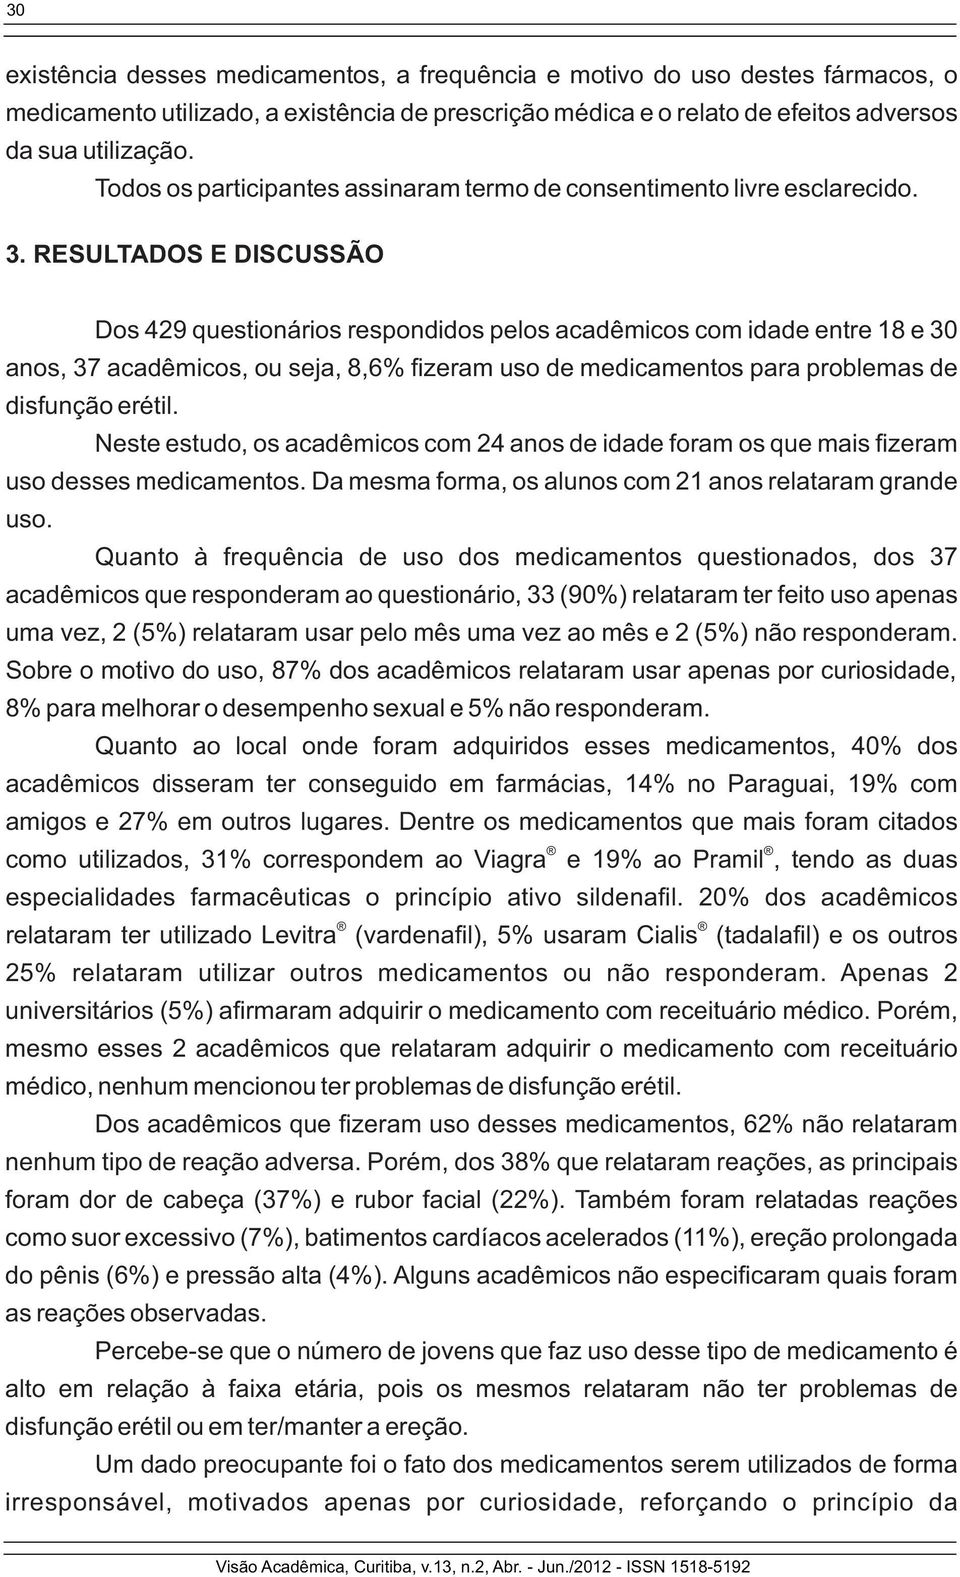 RESULTADOS E DISCUSSÃO Dos 429 questionários respondidos pelos acadêmicos com idade entre 18 e 30 anos, 37 acadêmicos, ou seja, 8,6% zeram uso de medicamentos para problemas de disfunção erétil.